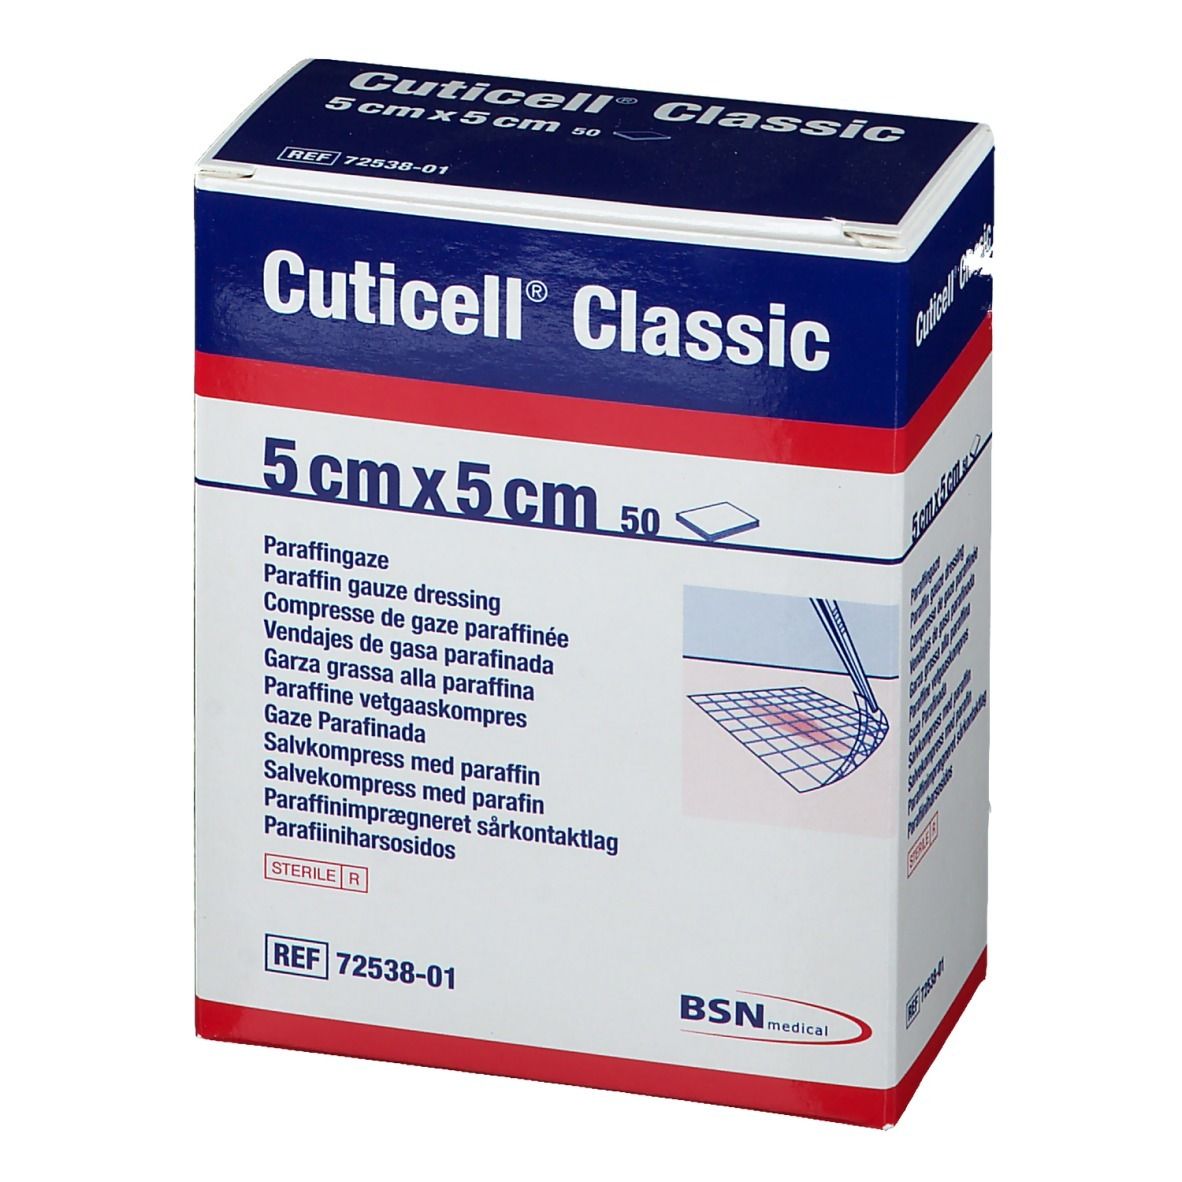 Cuticell® Classic 5 cm x 5 cm